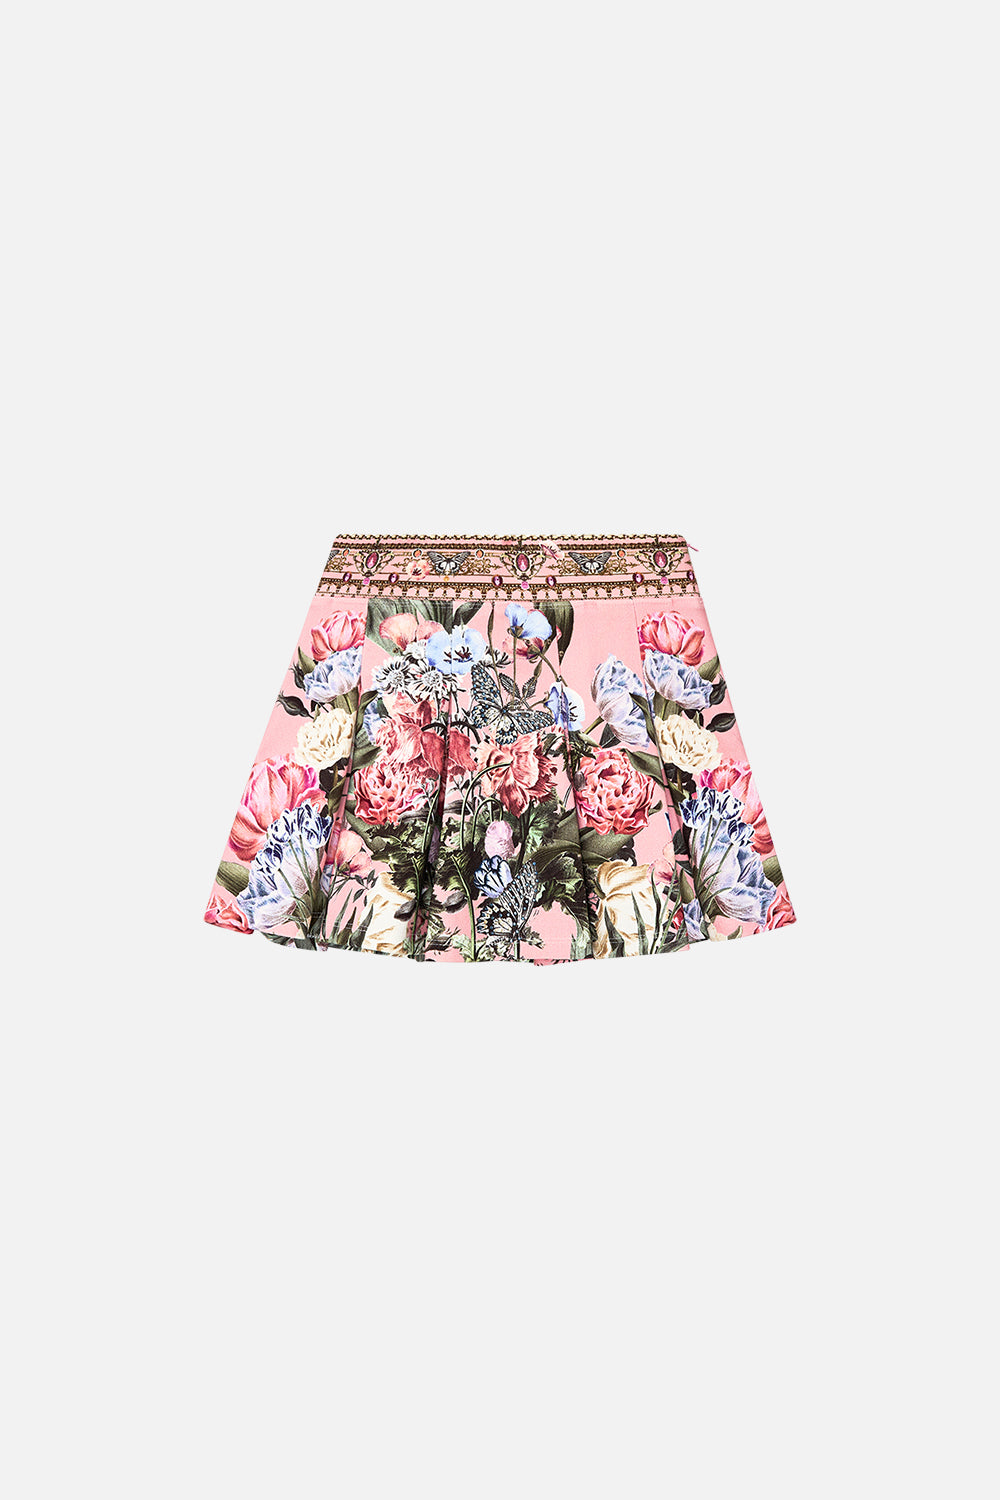 Milla by CAMILLA kids mini skirt in Woodblock Wonder print 